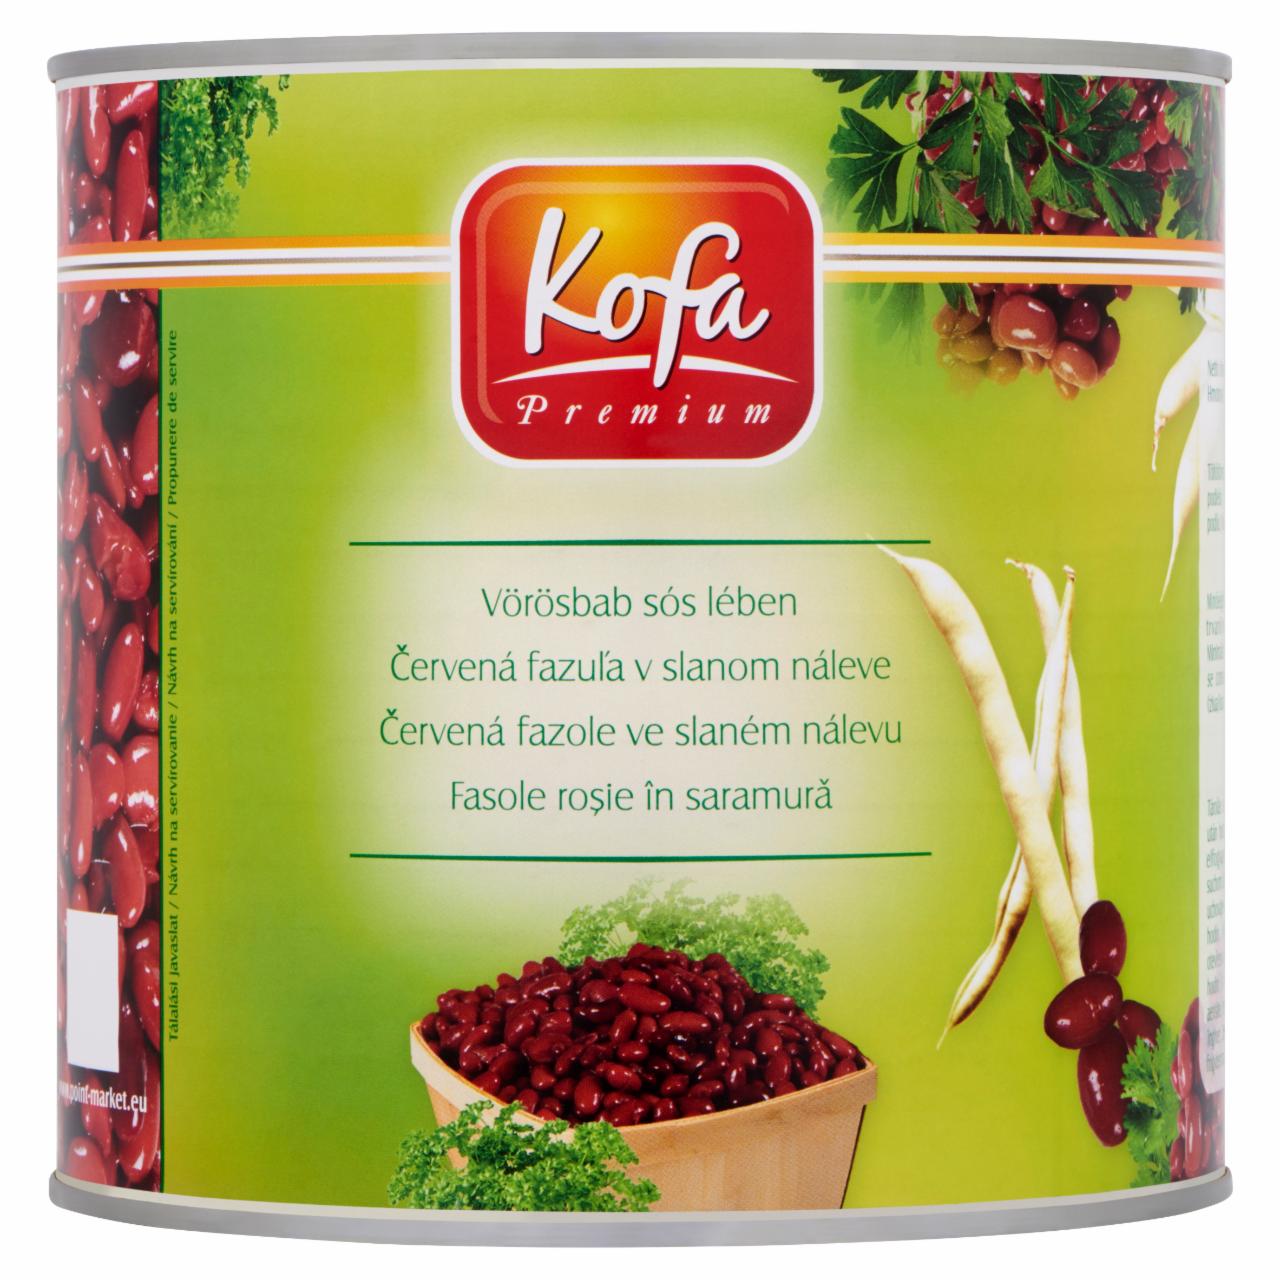 Képek - Kofa Premium vörösbab sós lében 2500 g